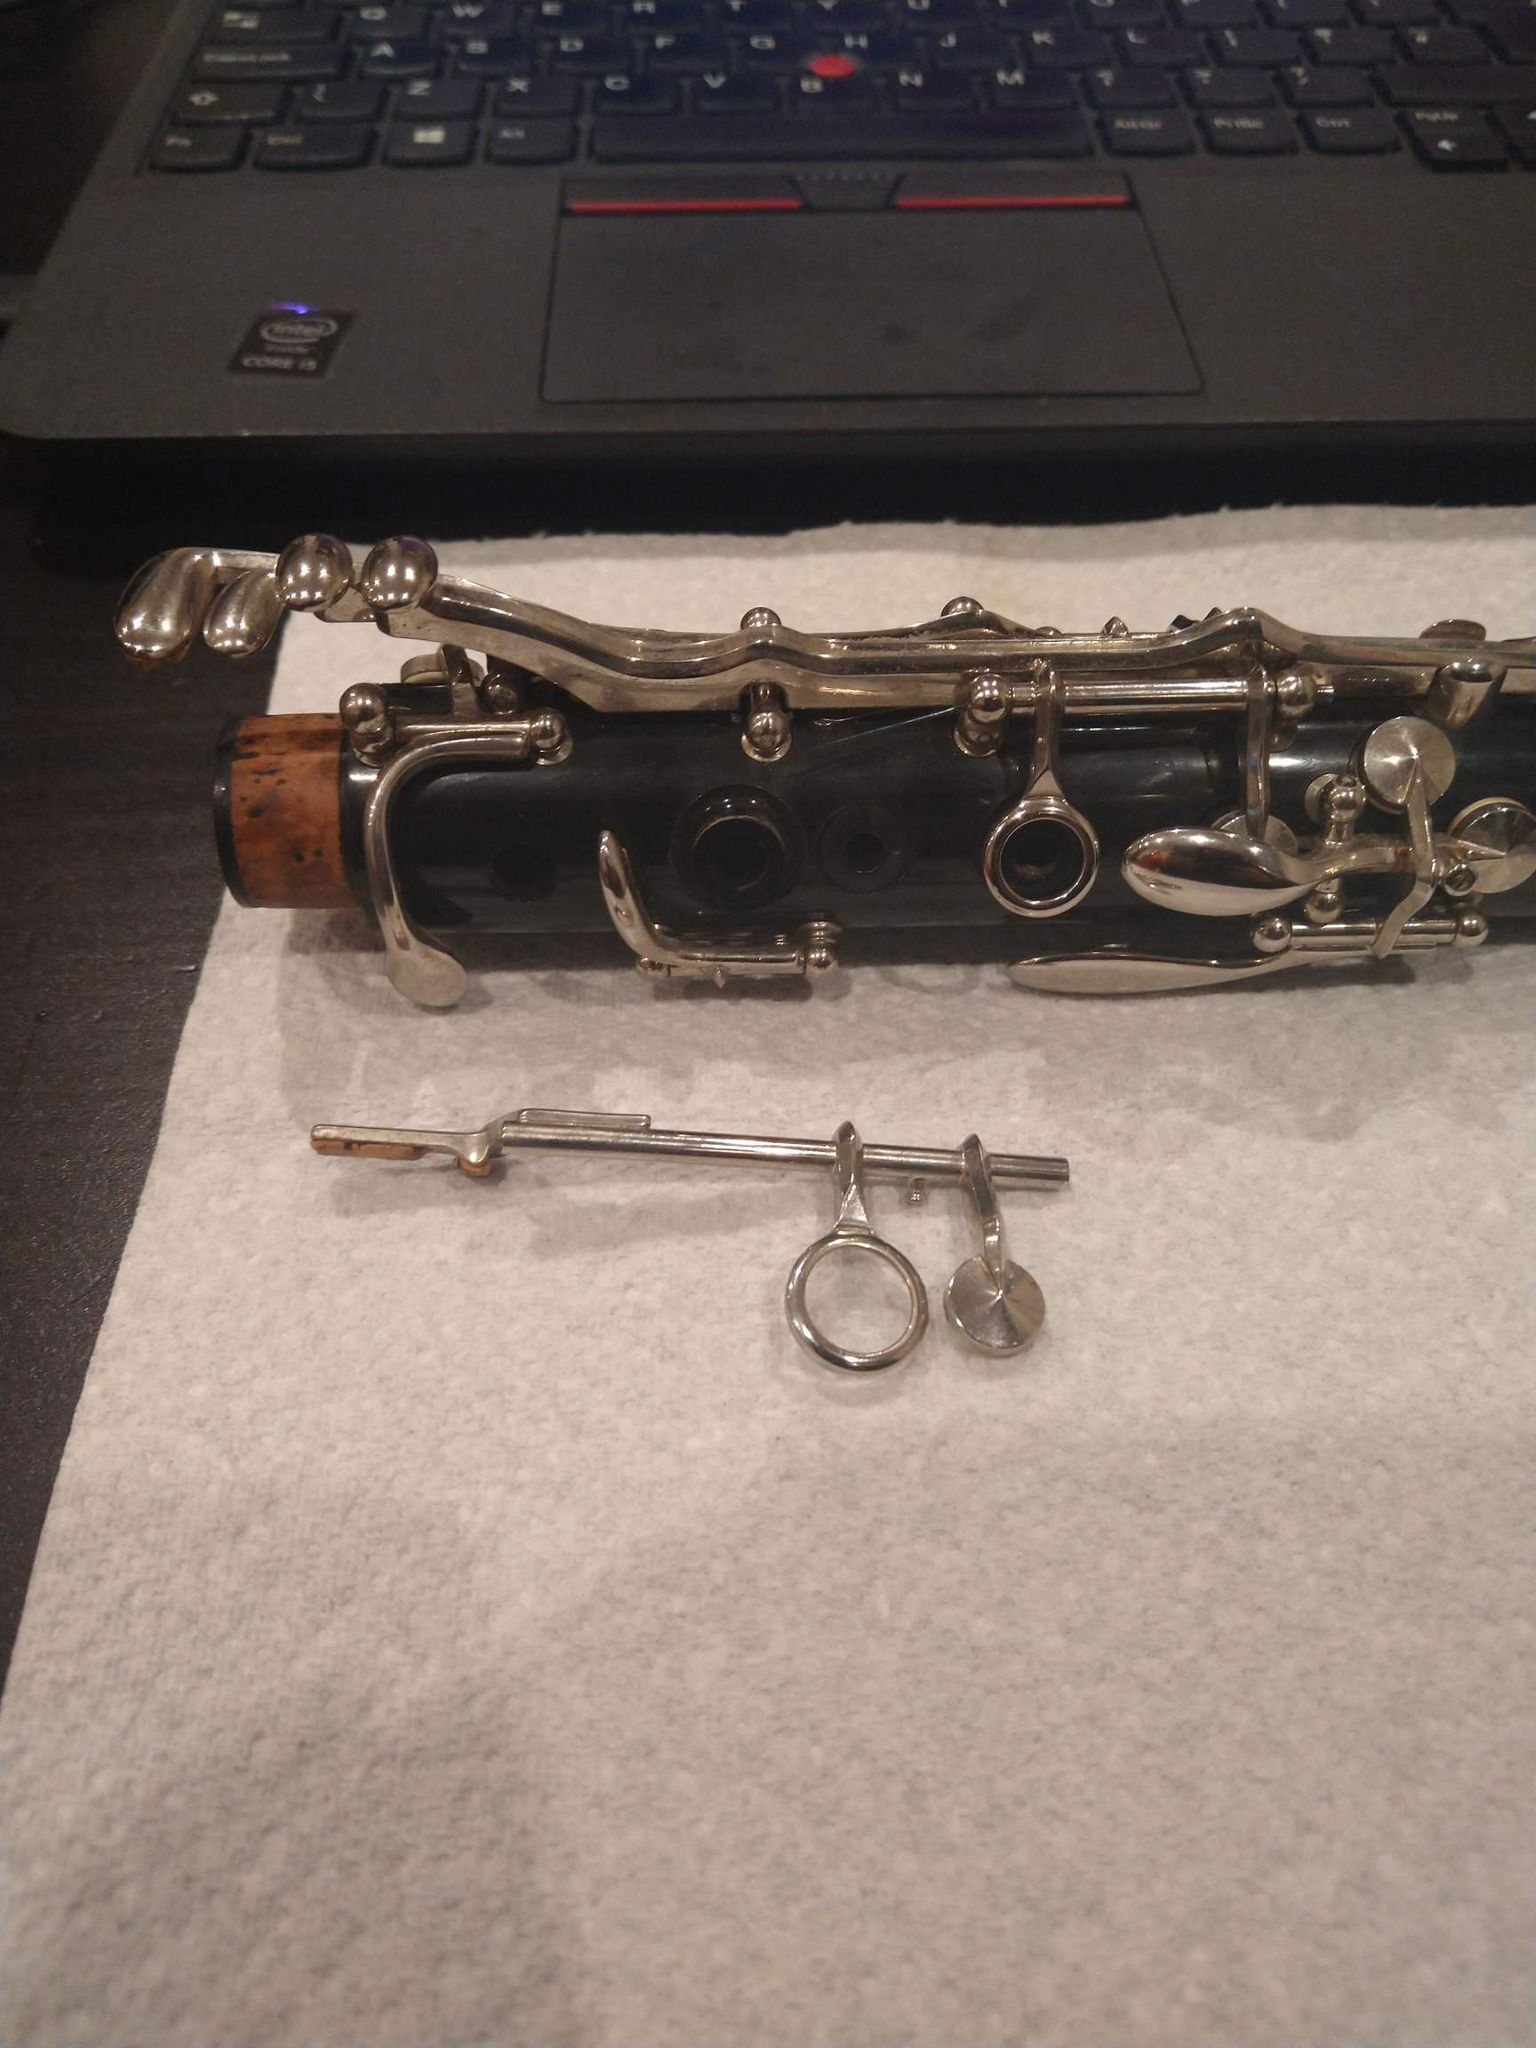 Broken clarinet